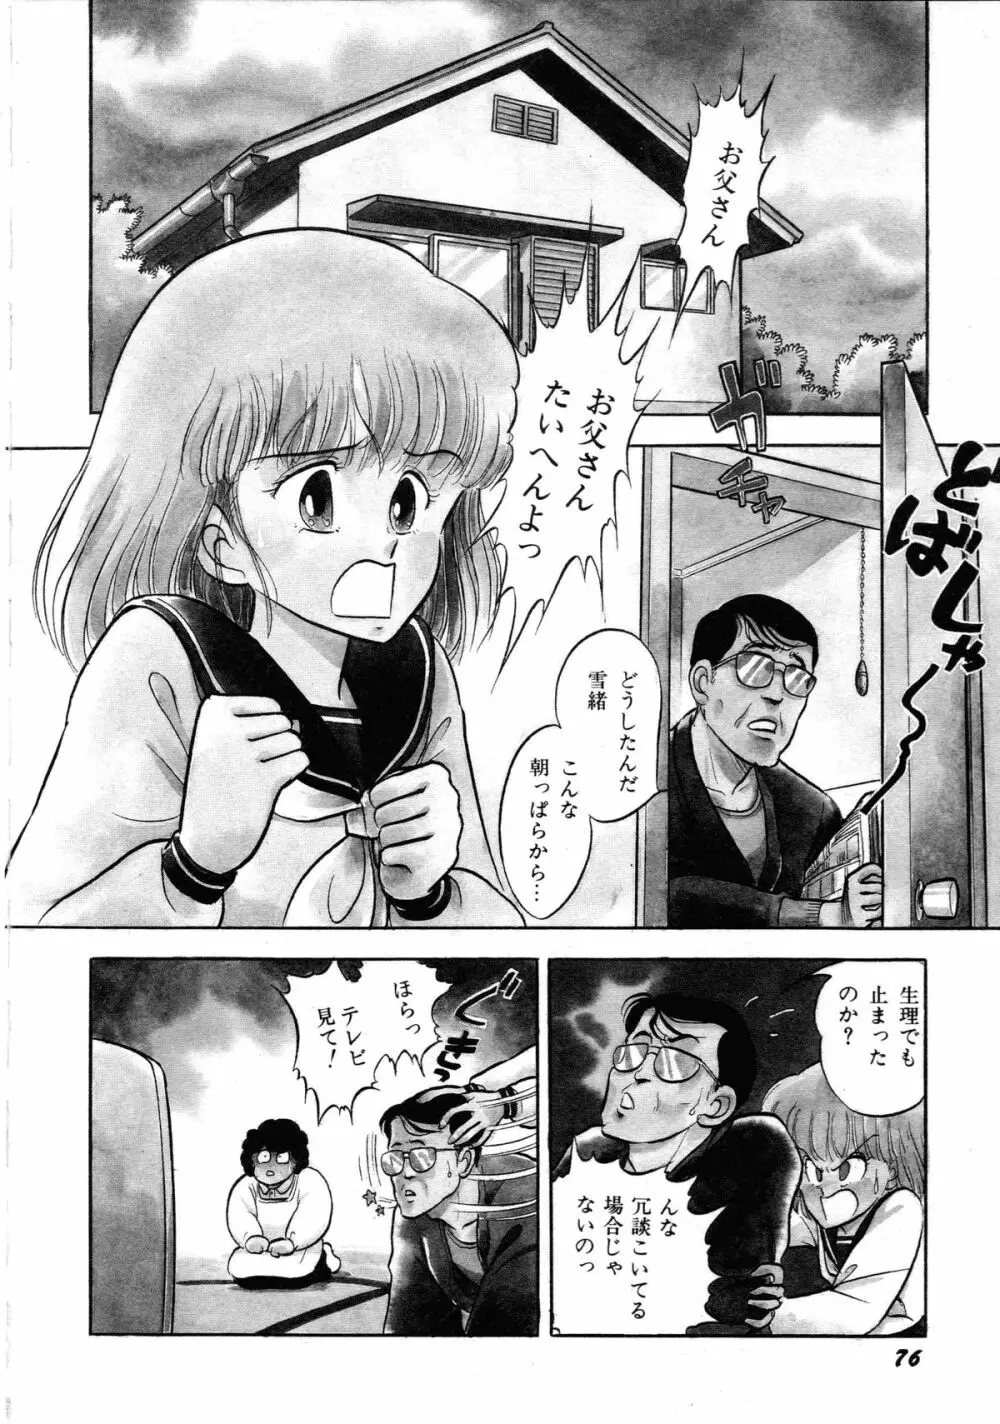 ロボット&美少女傑作選 レモン・ピープル1982-1986 80ページ